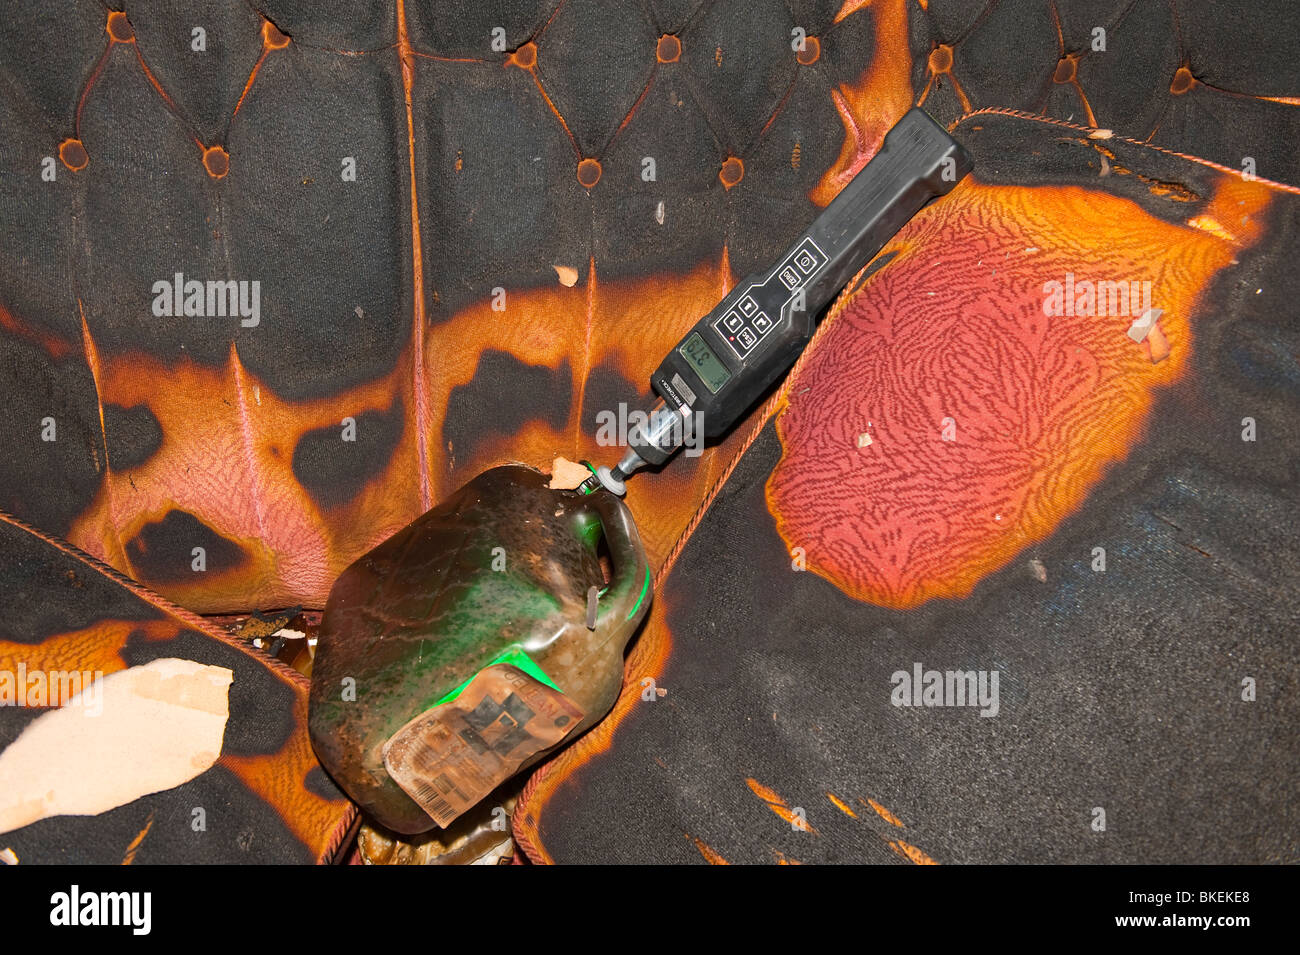 Medición detector Accelerant Compunds orgánicos volátiles en la escena del incendio incendio Foto de stock